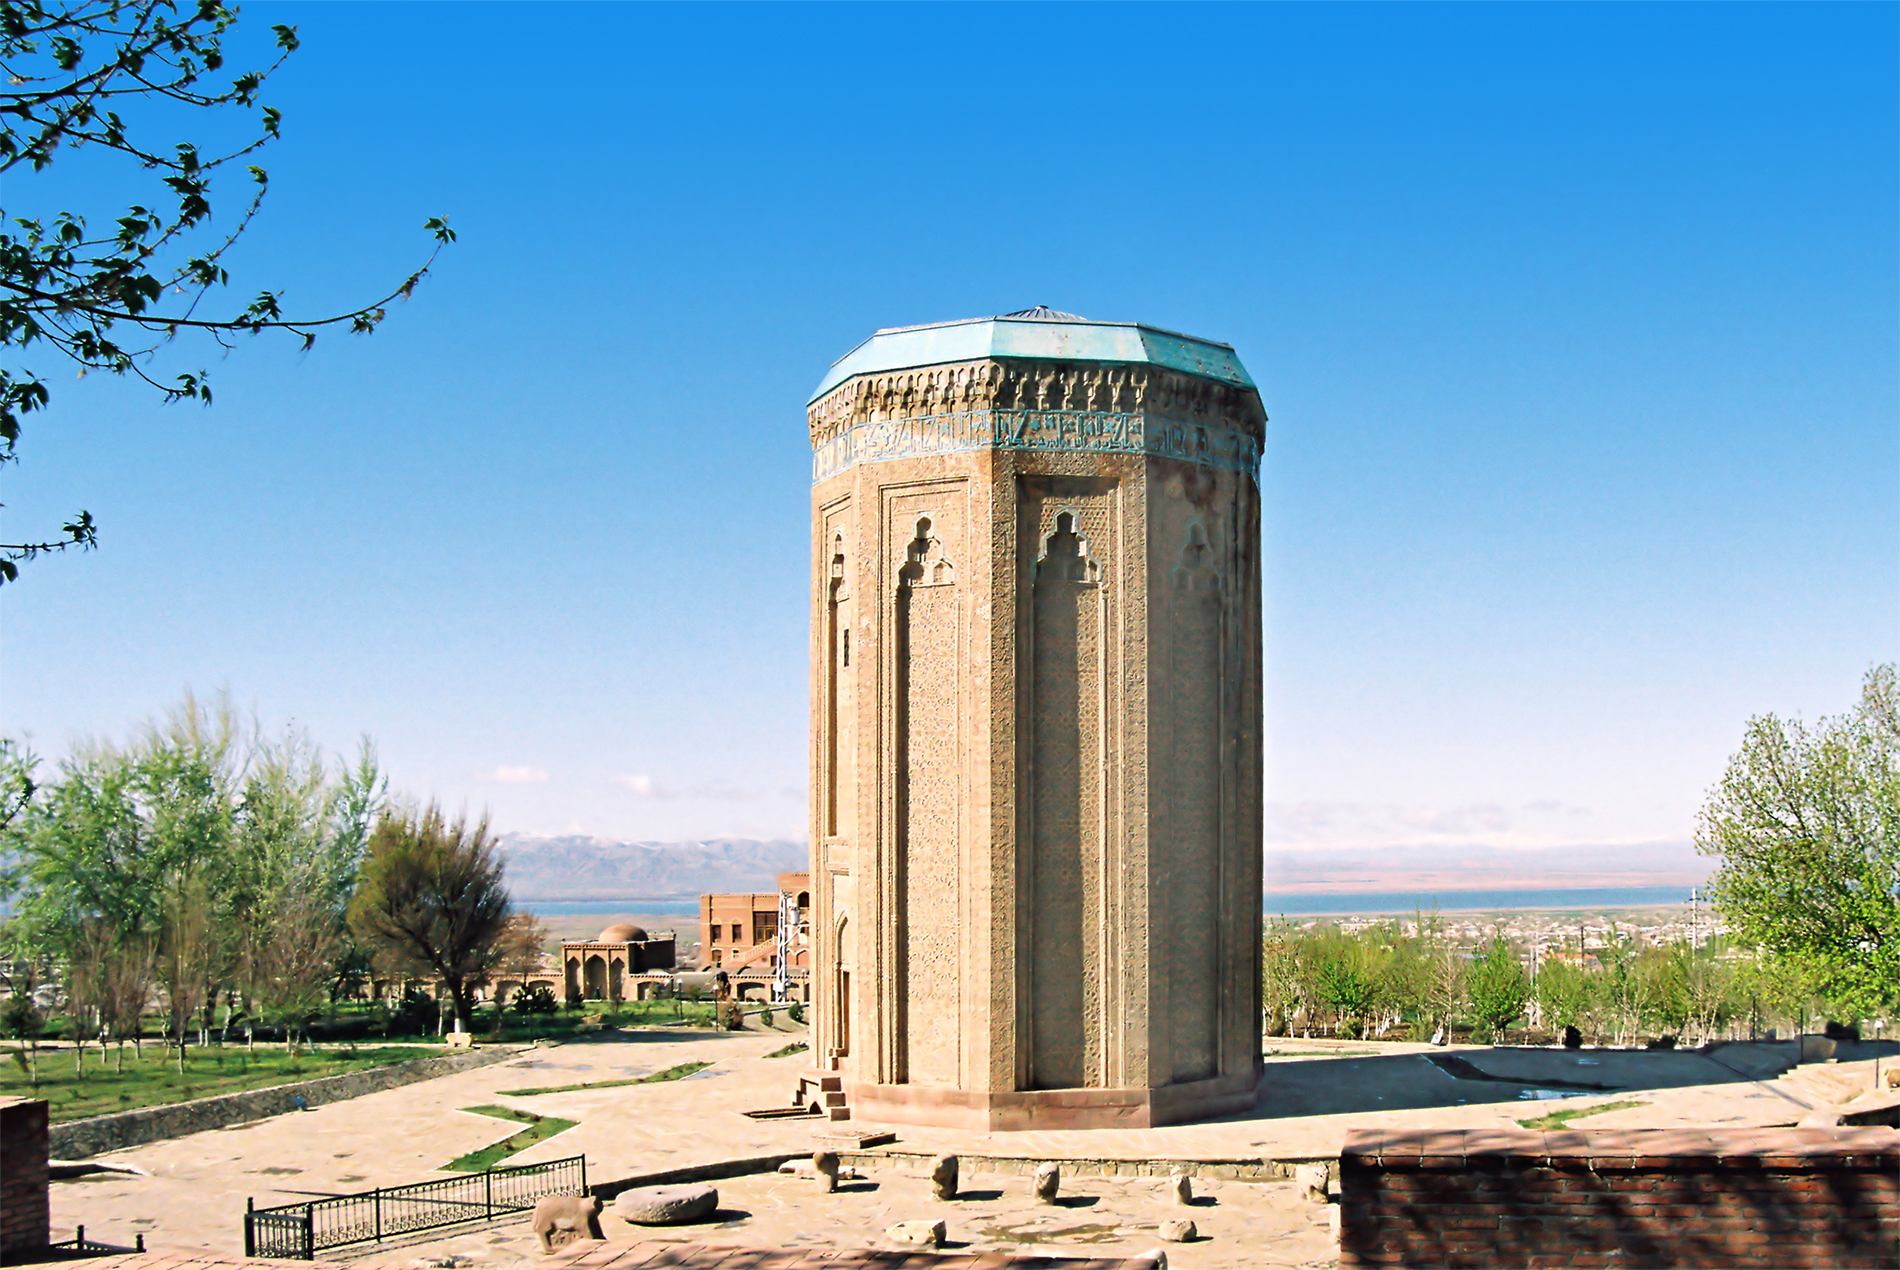 Nakhchivan, hidden treasure of global architecture heritage